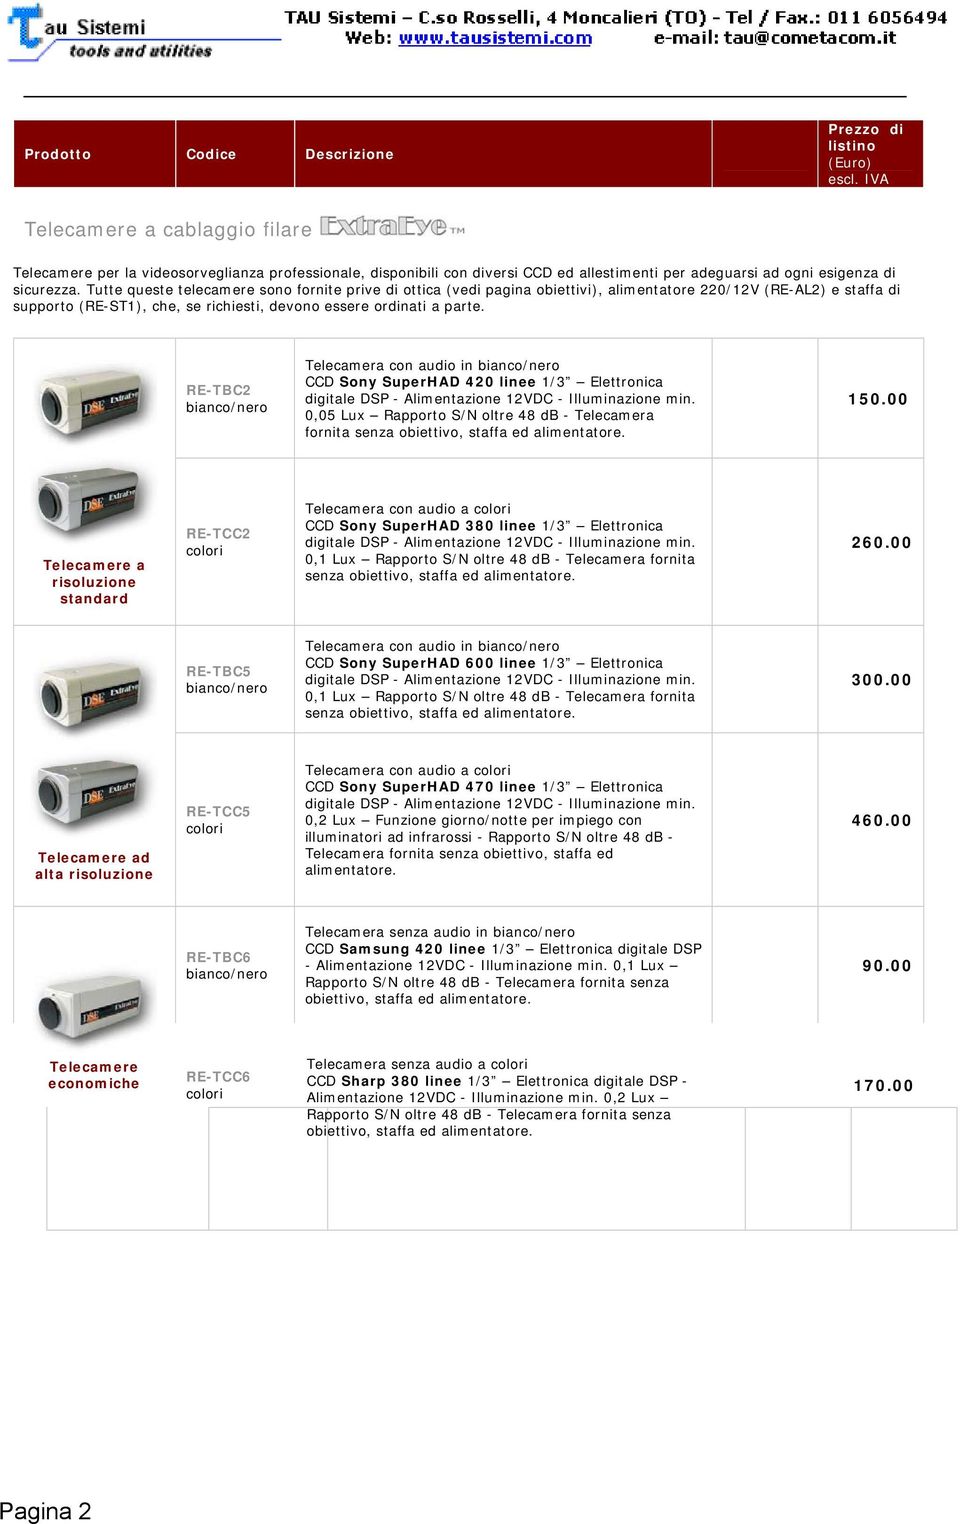 RE-TBC2 Telecamera con audio in CCD Sony SuperHAD 420 linee 1/3 Elettronica digitale DSP - Alimentazione 12VDC - Illuminazione min.